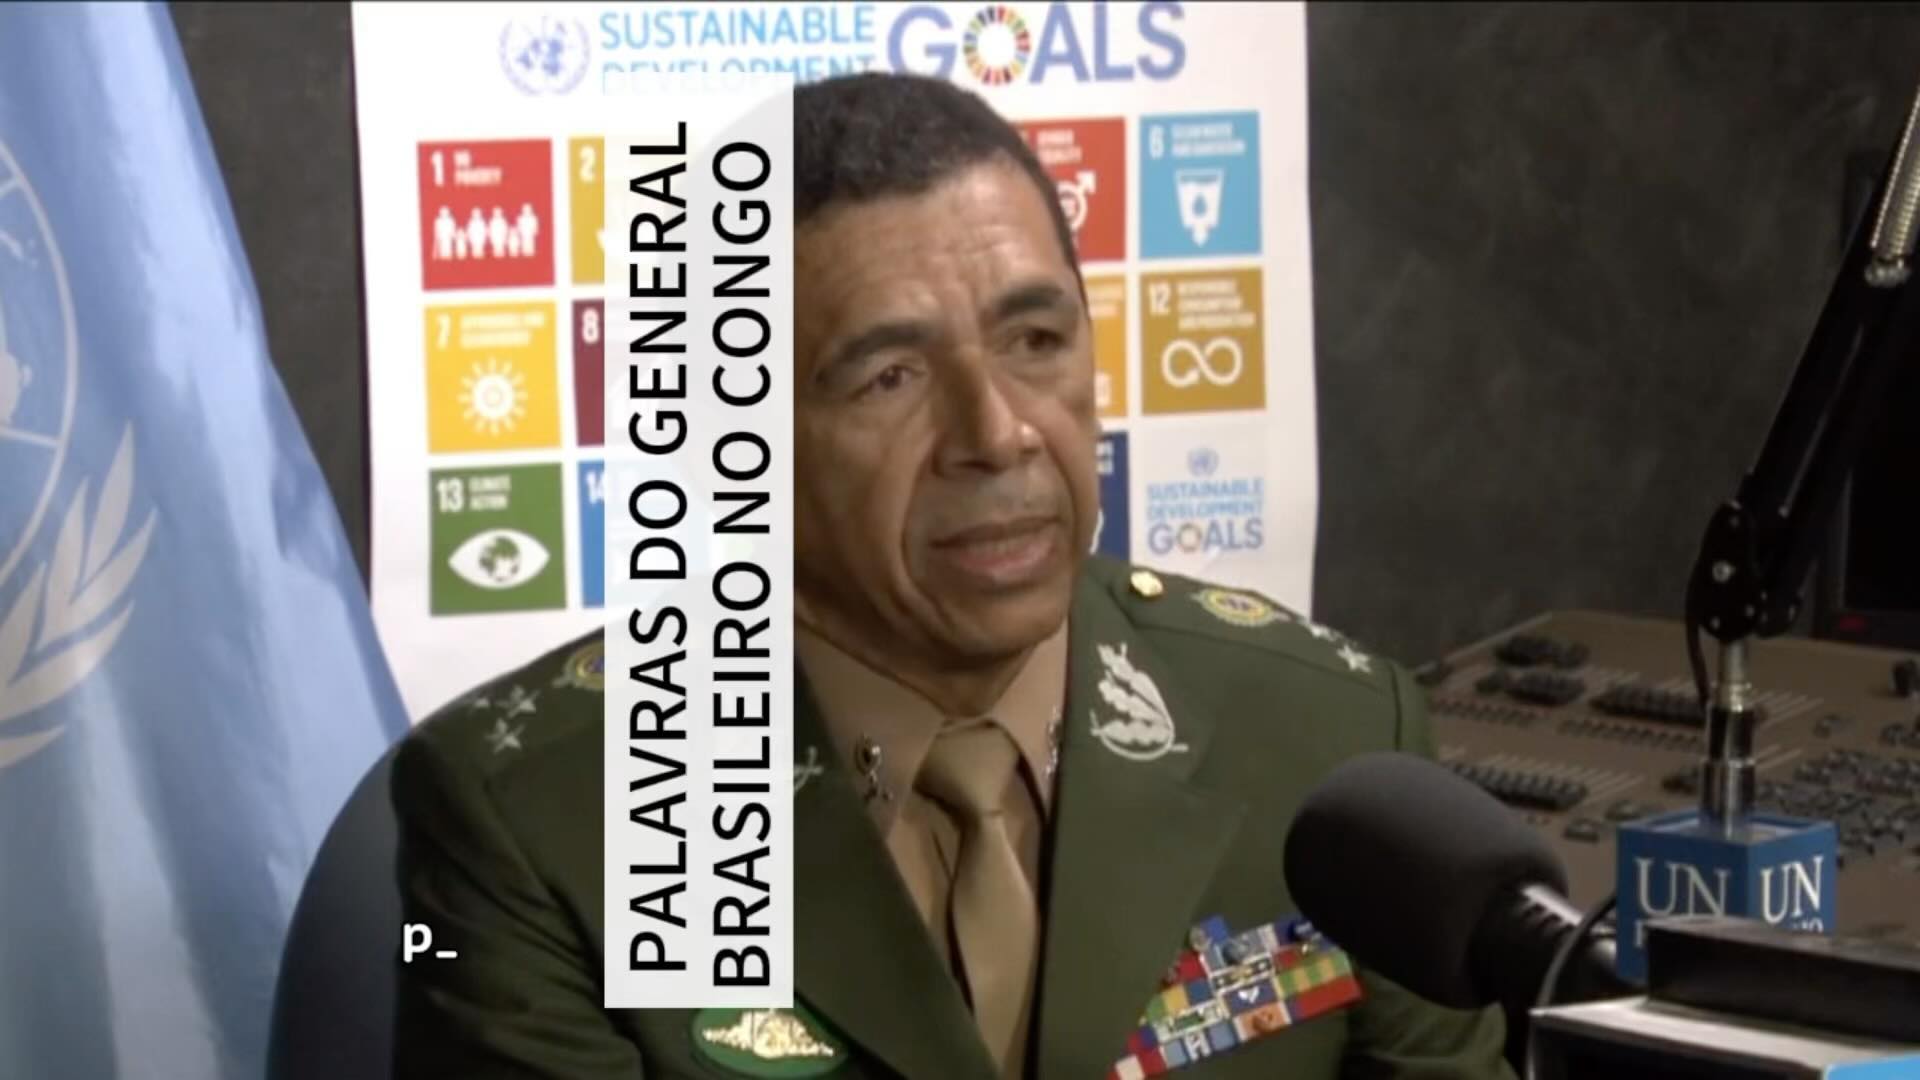 Palavras do General Brasileiro comandante da tropa da ONU no Congo

No dia 27 de...